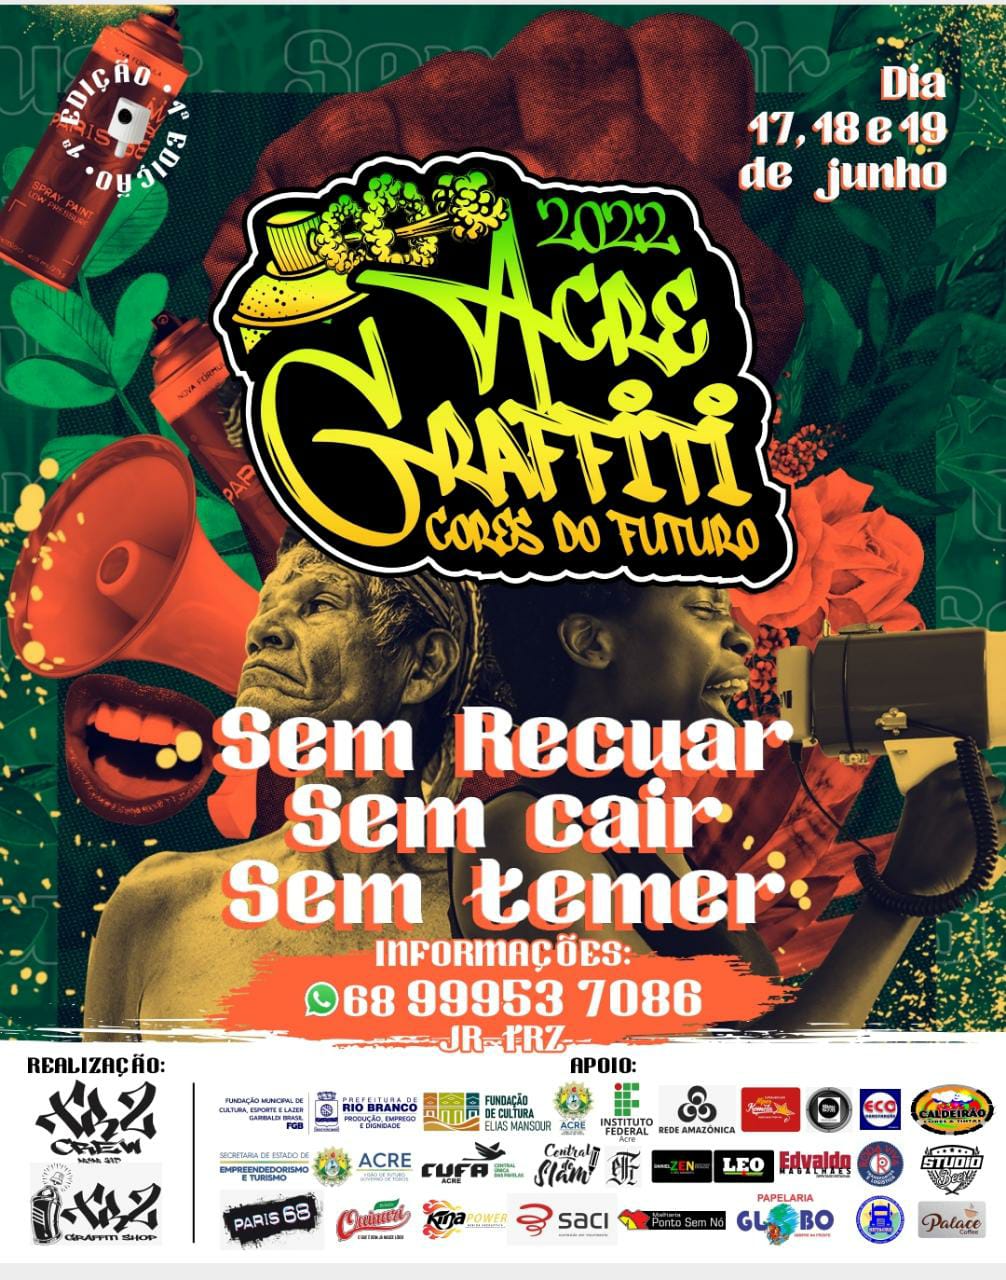 Evento de grafite e hip-hop ocorre em junho no Acre com mais de 70 artistas